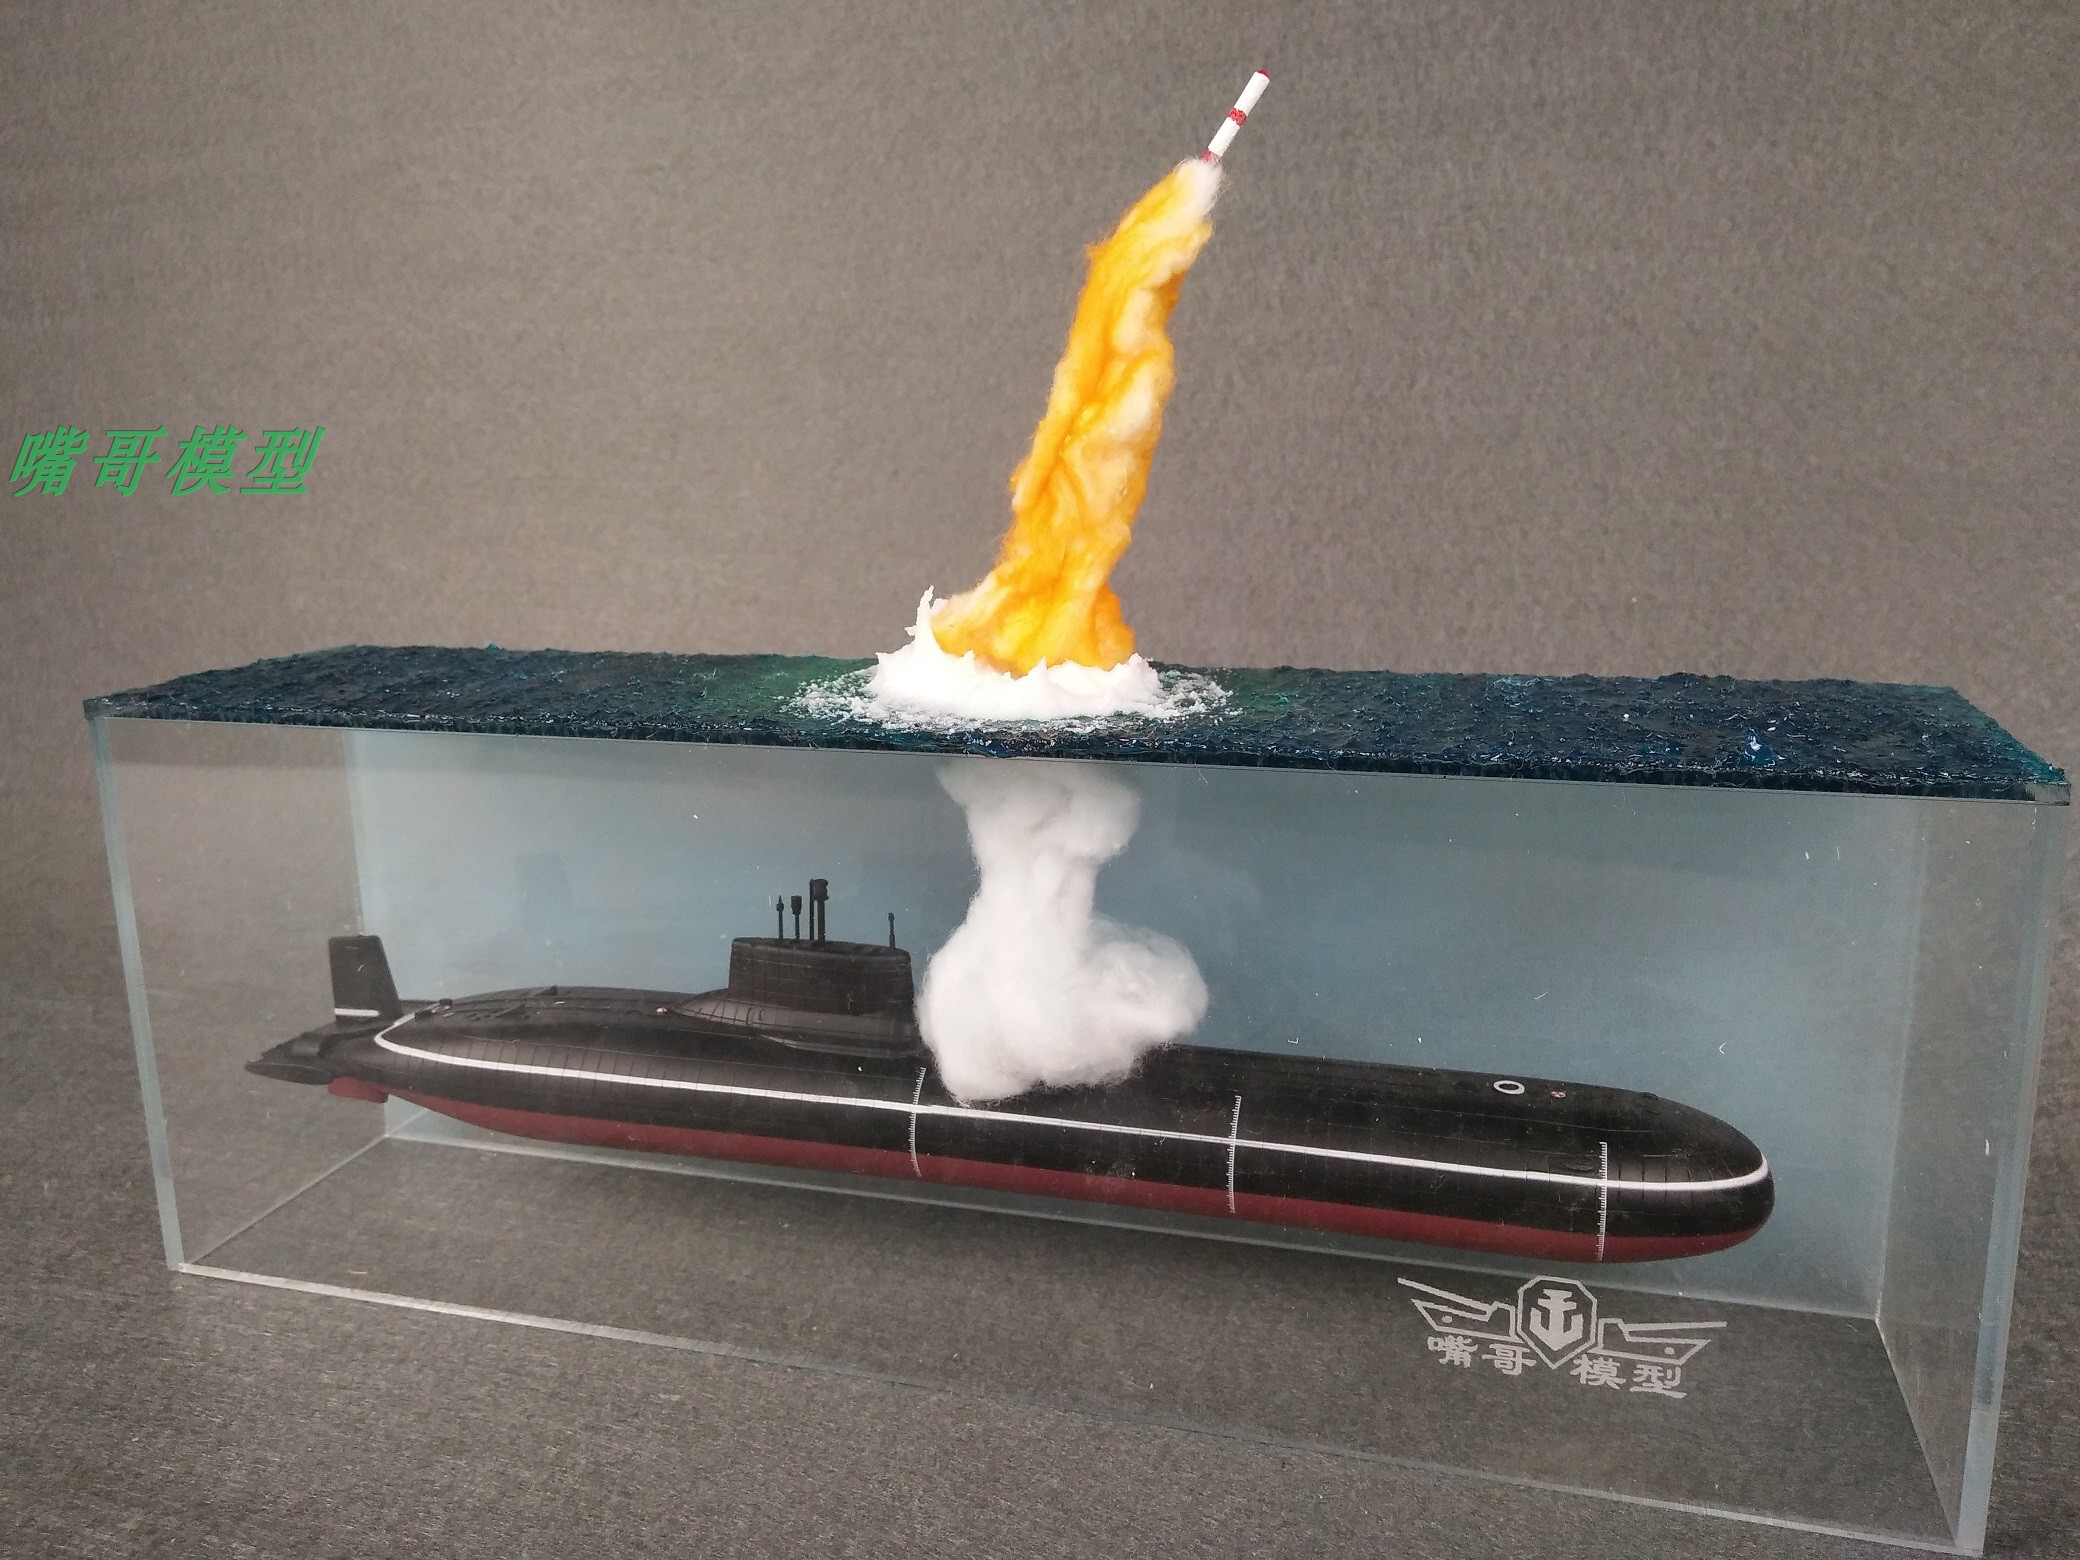 成品 比例模型定制 台风级潜艇 导弹发射场景 仿真模型 手工制作